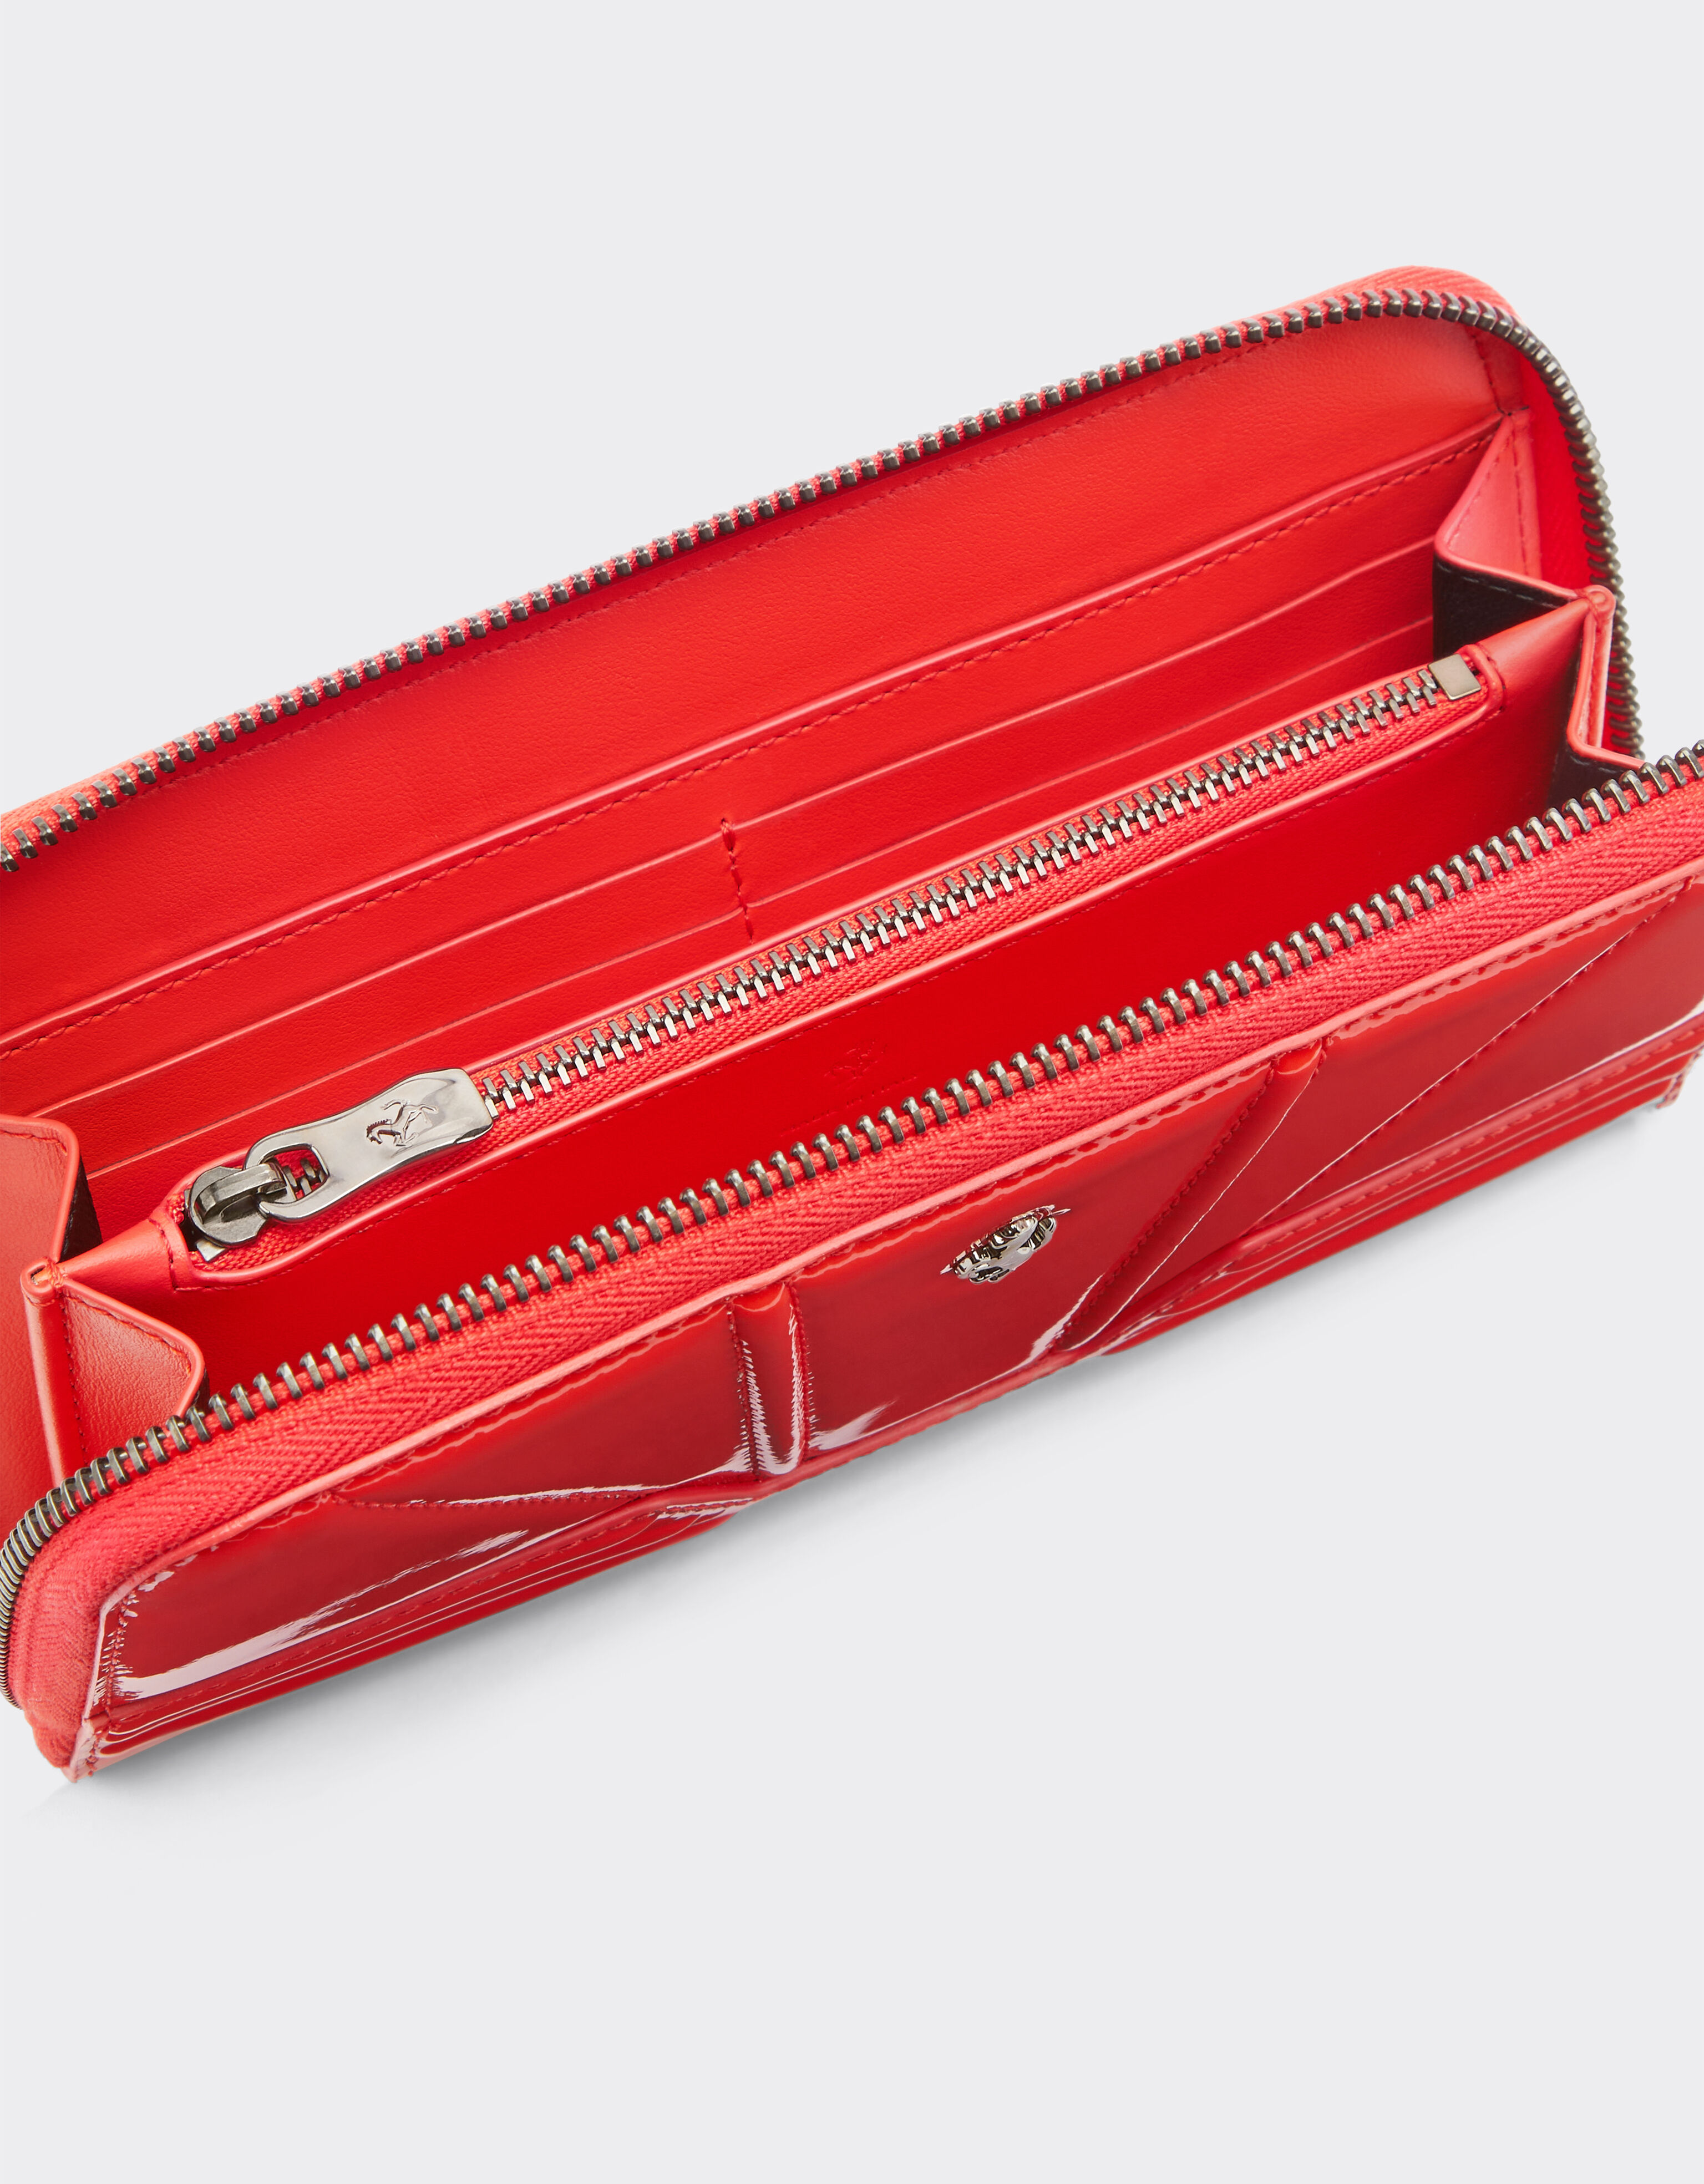 Ferrari Portemonnaie aus Lackleder mit Reißverschluss Rosso Dino 20242f